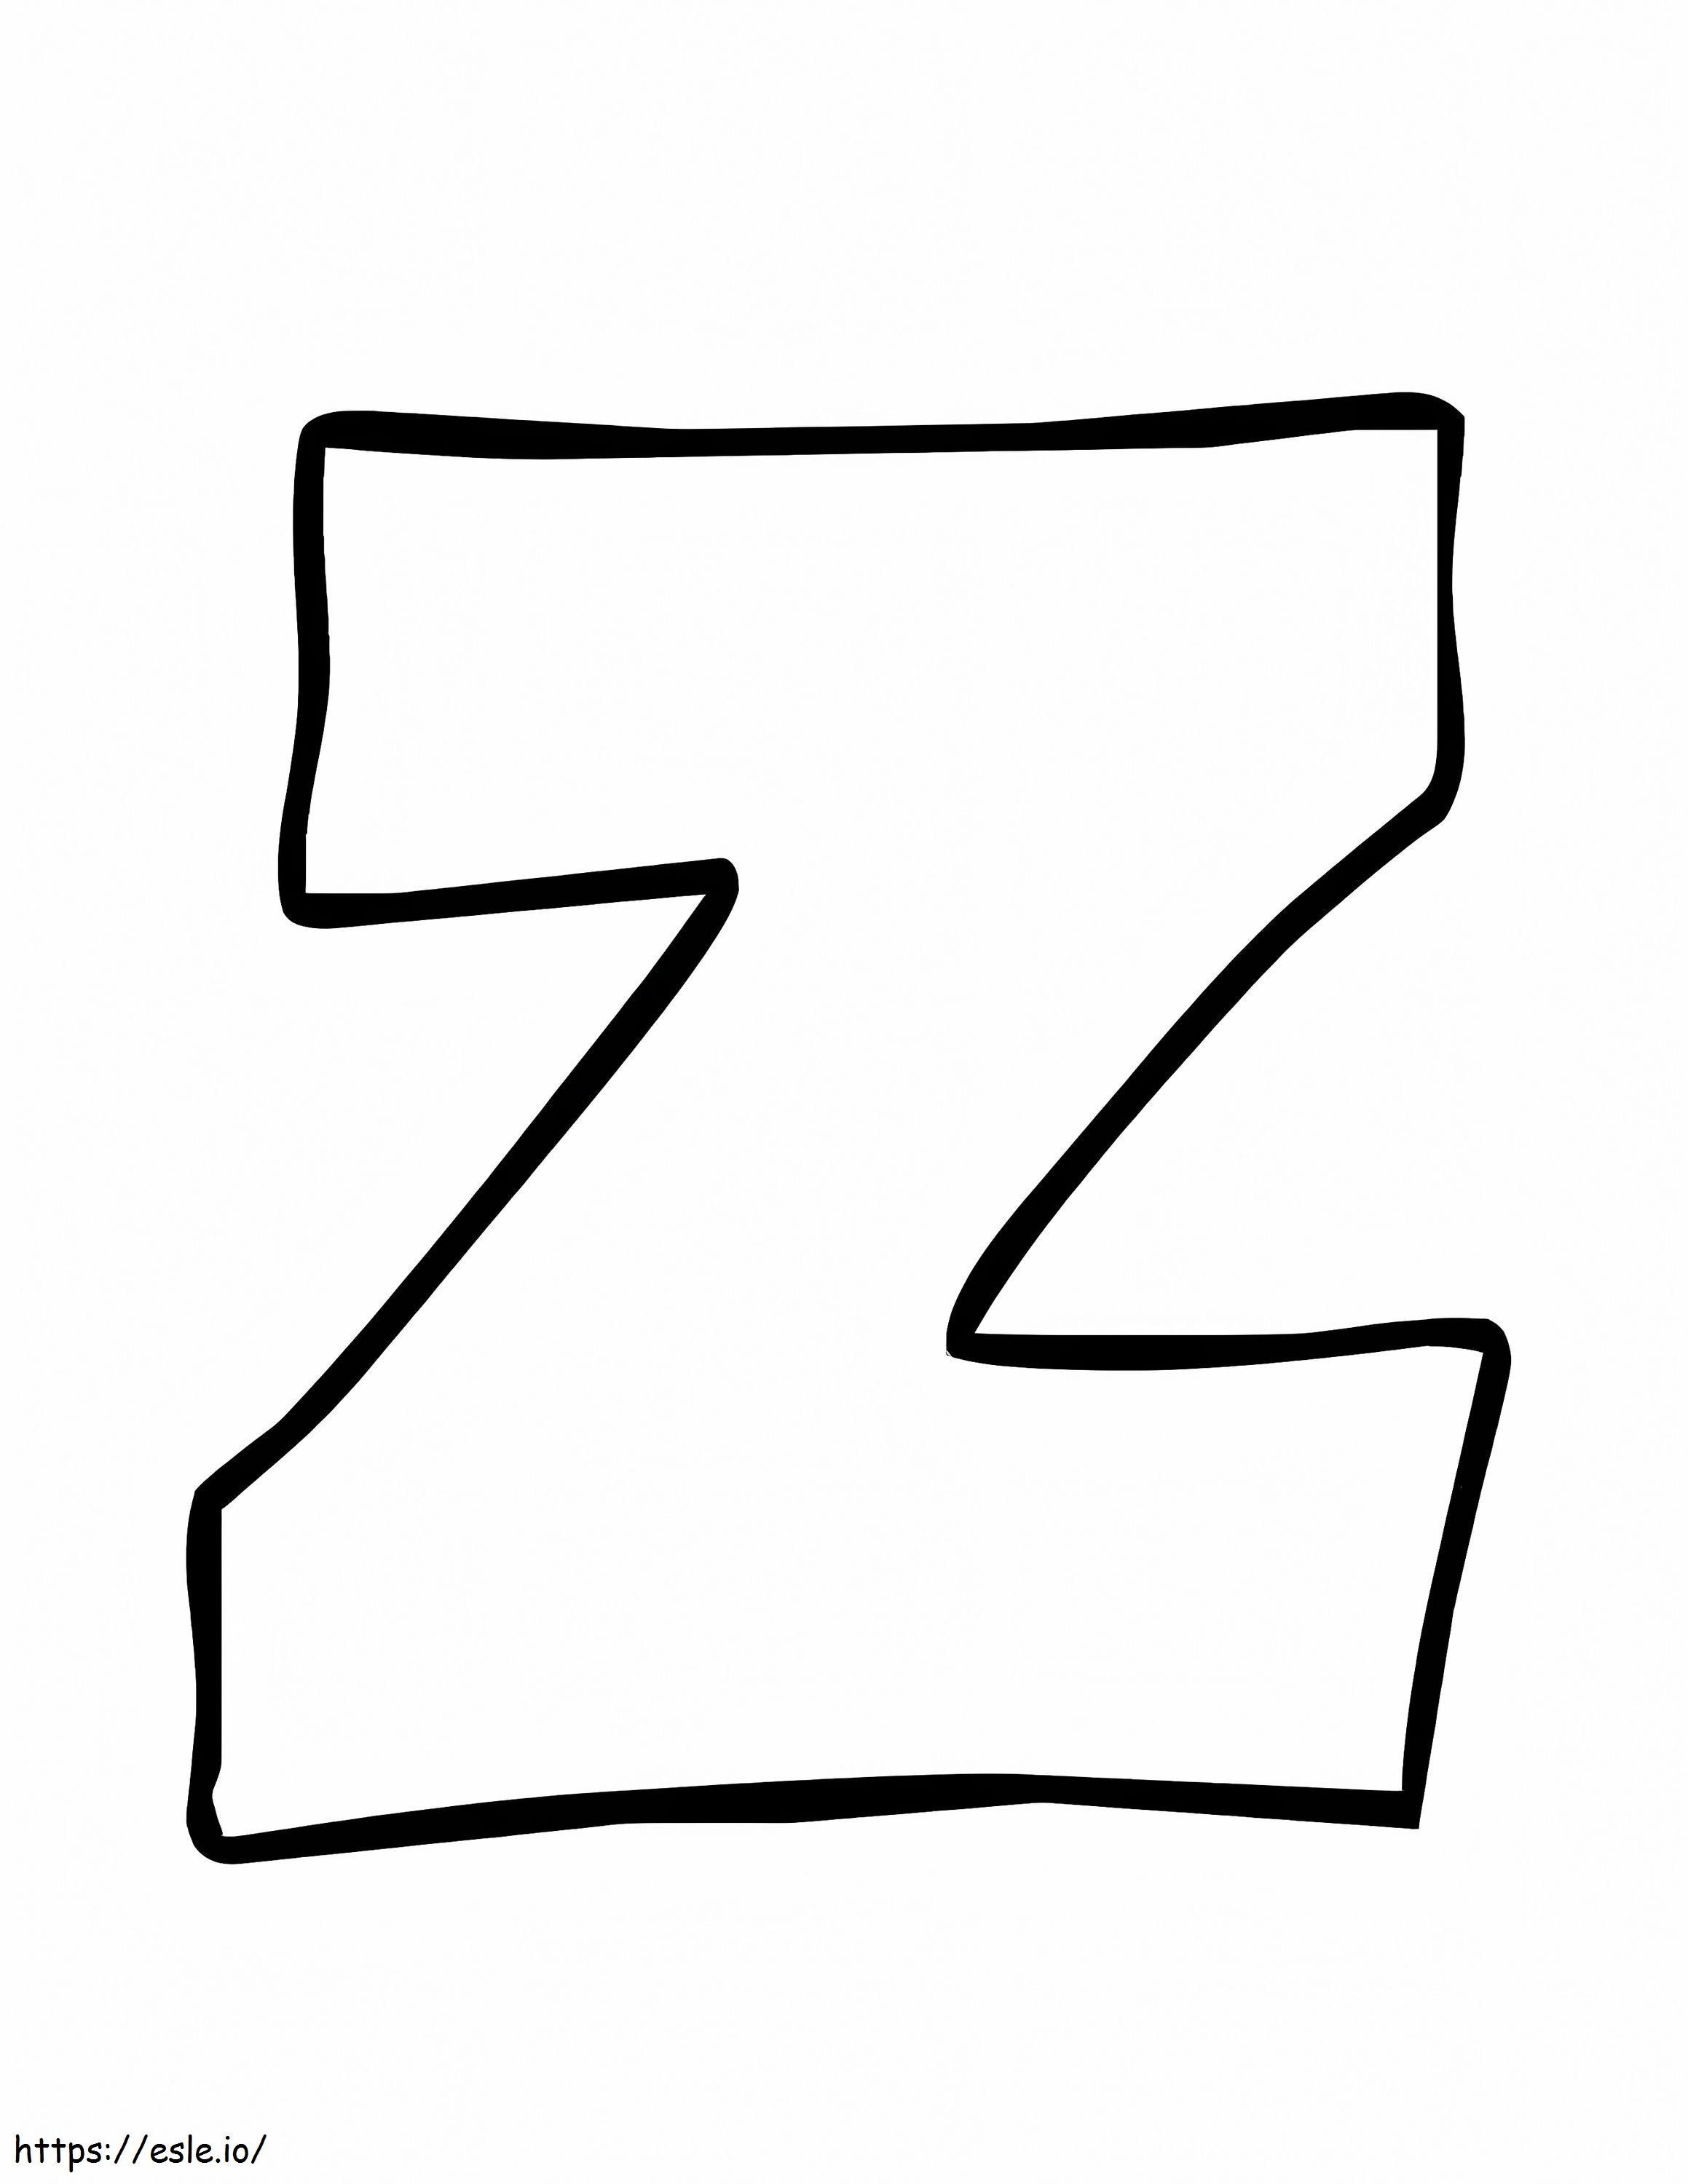 Dibujo de la letra Z para colorear